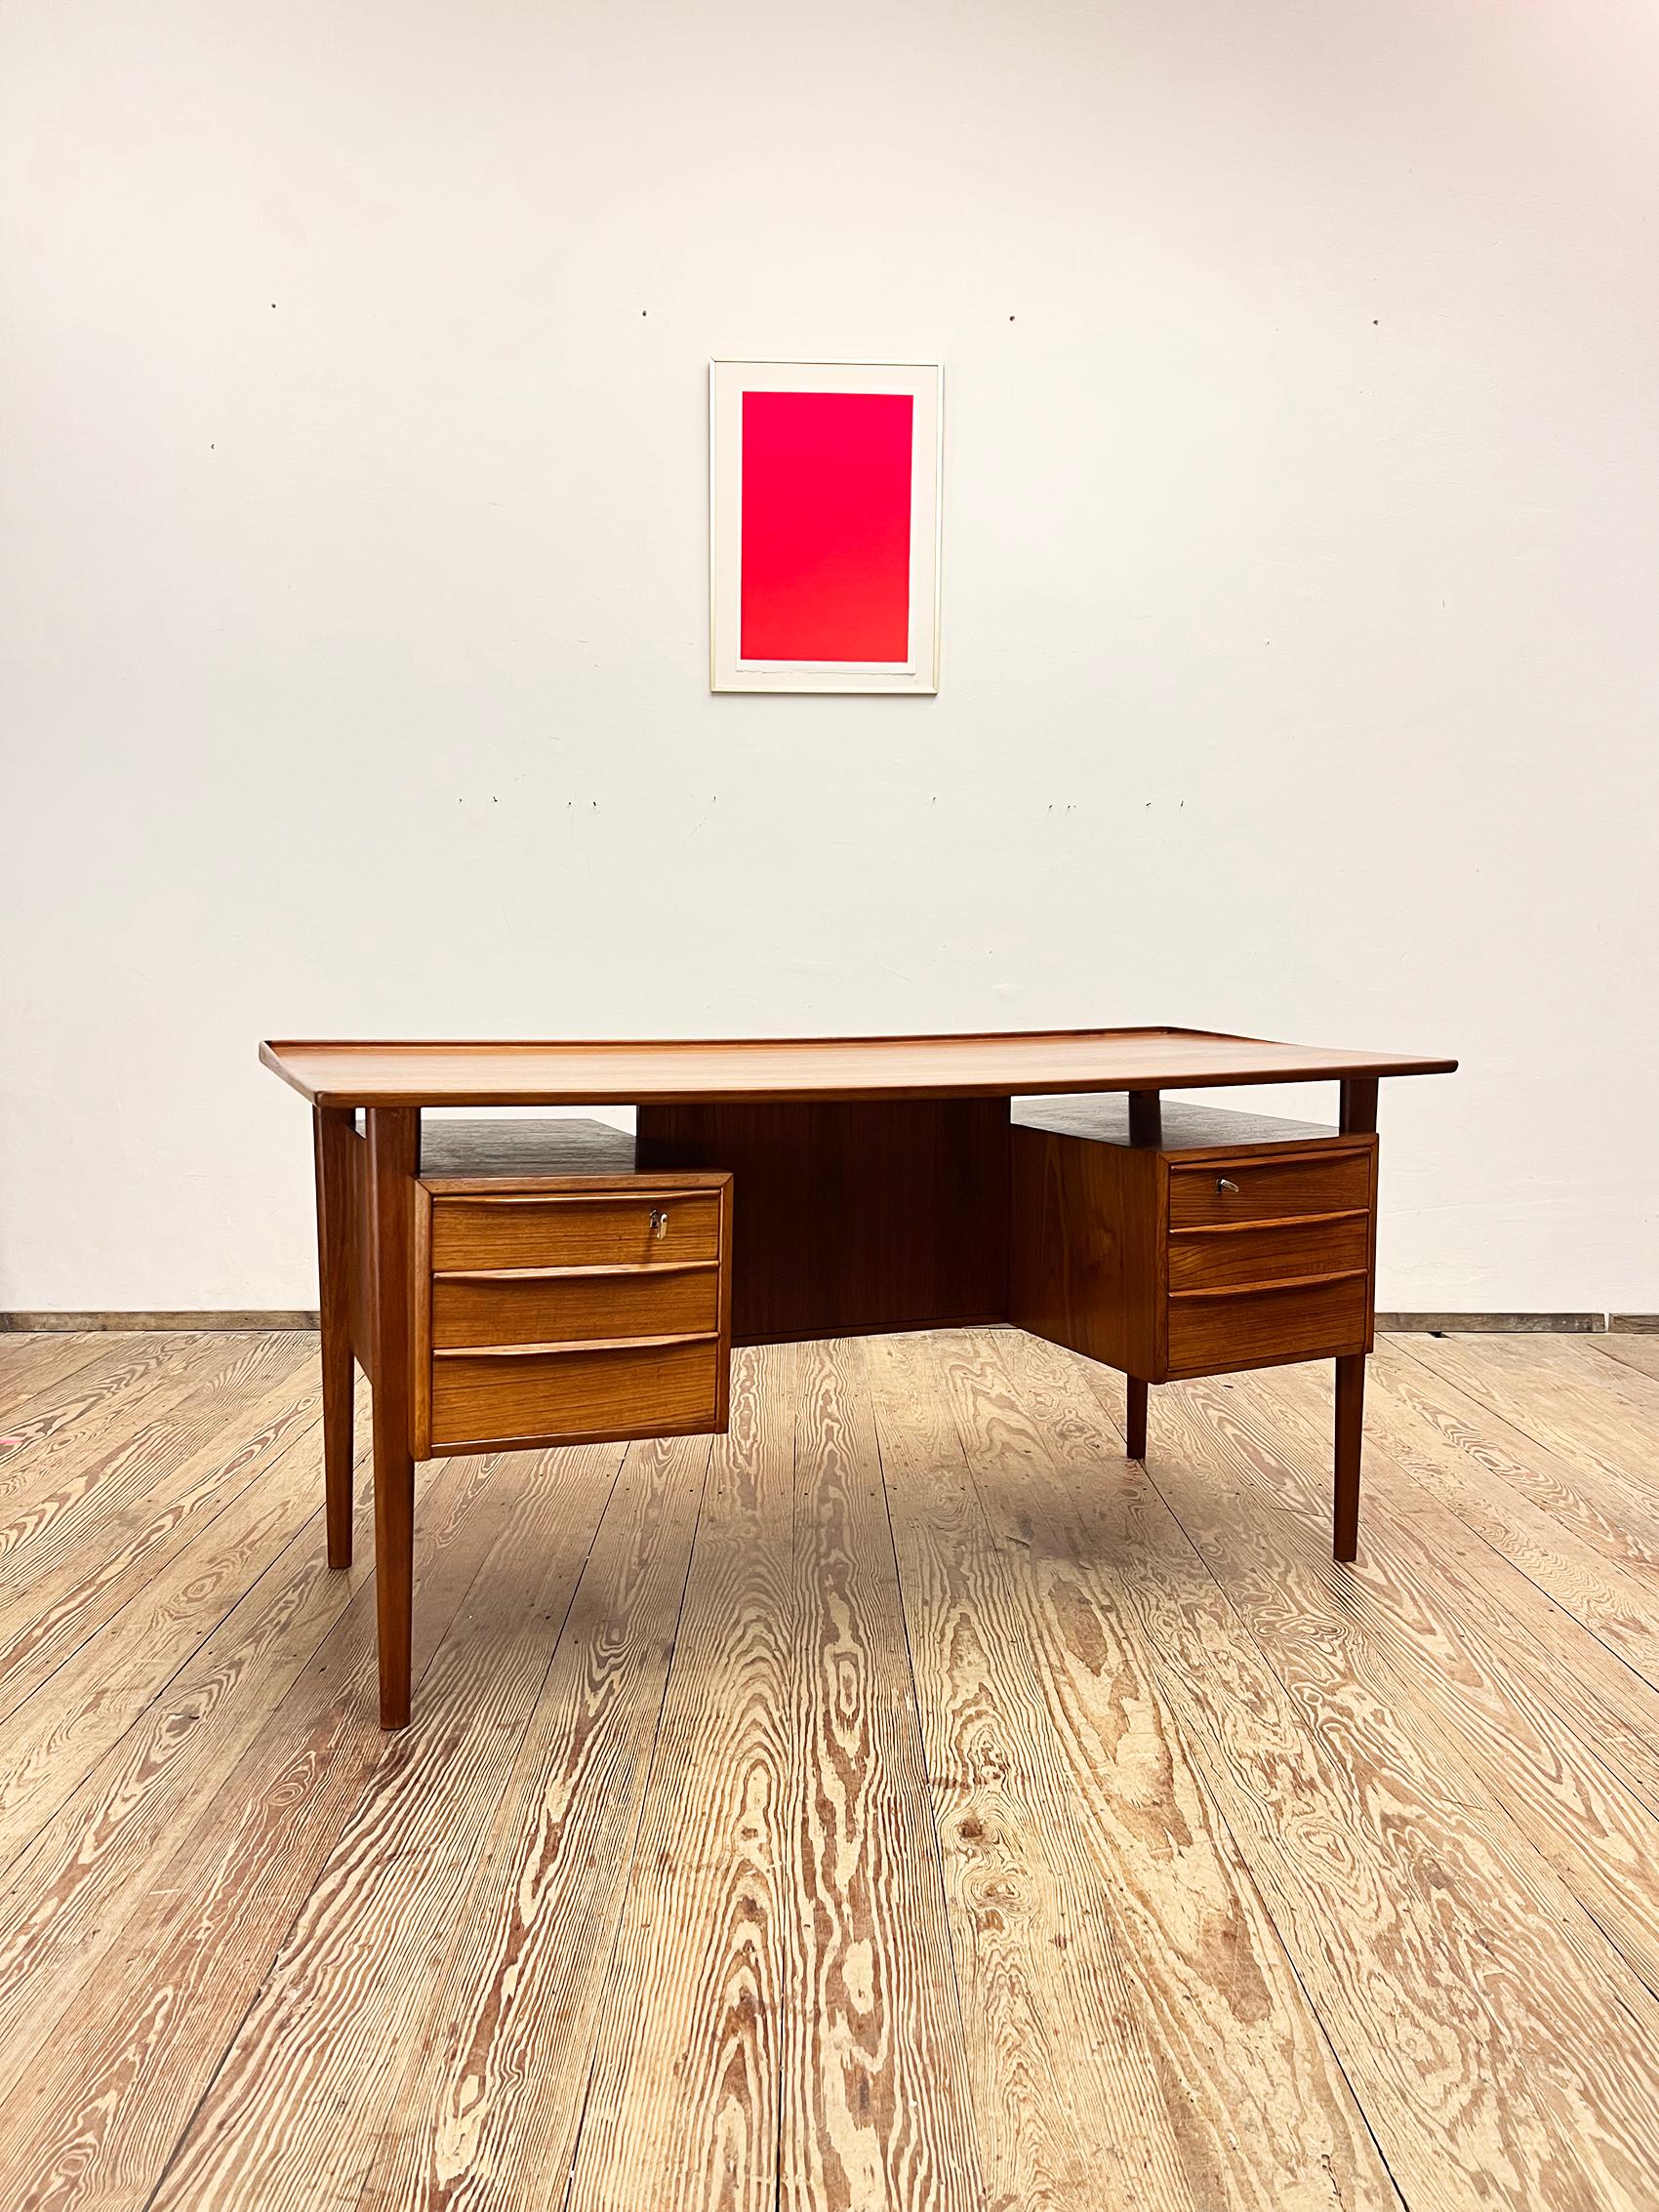 Dimensions 74 cm x 155 cm x 70 cm (profondeur x largeur x hauteur)


Ce bureau danois du milieu du siècle a été conçu par Peter Løvig Nielsen et produit par Hedensted Møbelfabrik Danemark en 1976. La table est fabriquée en bois de teck et comporte